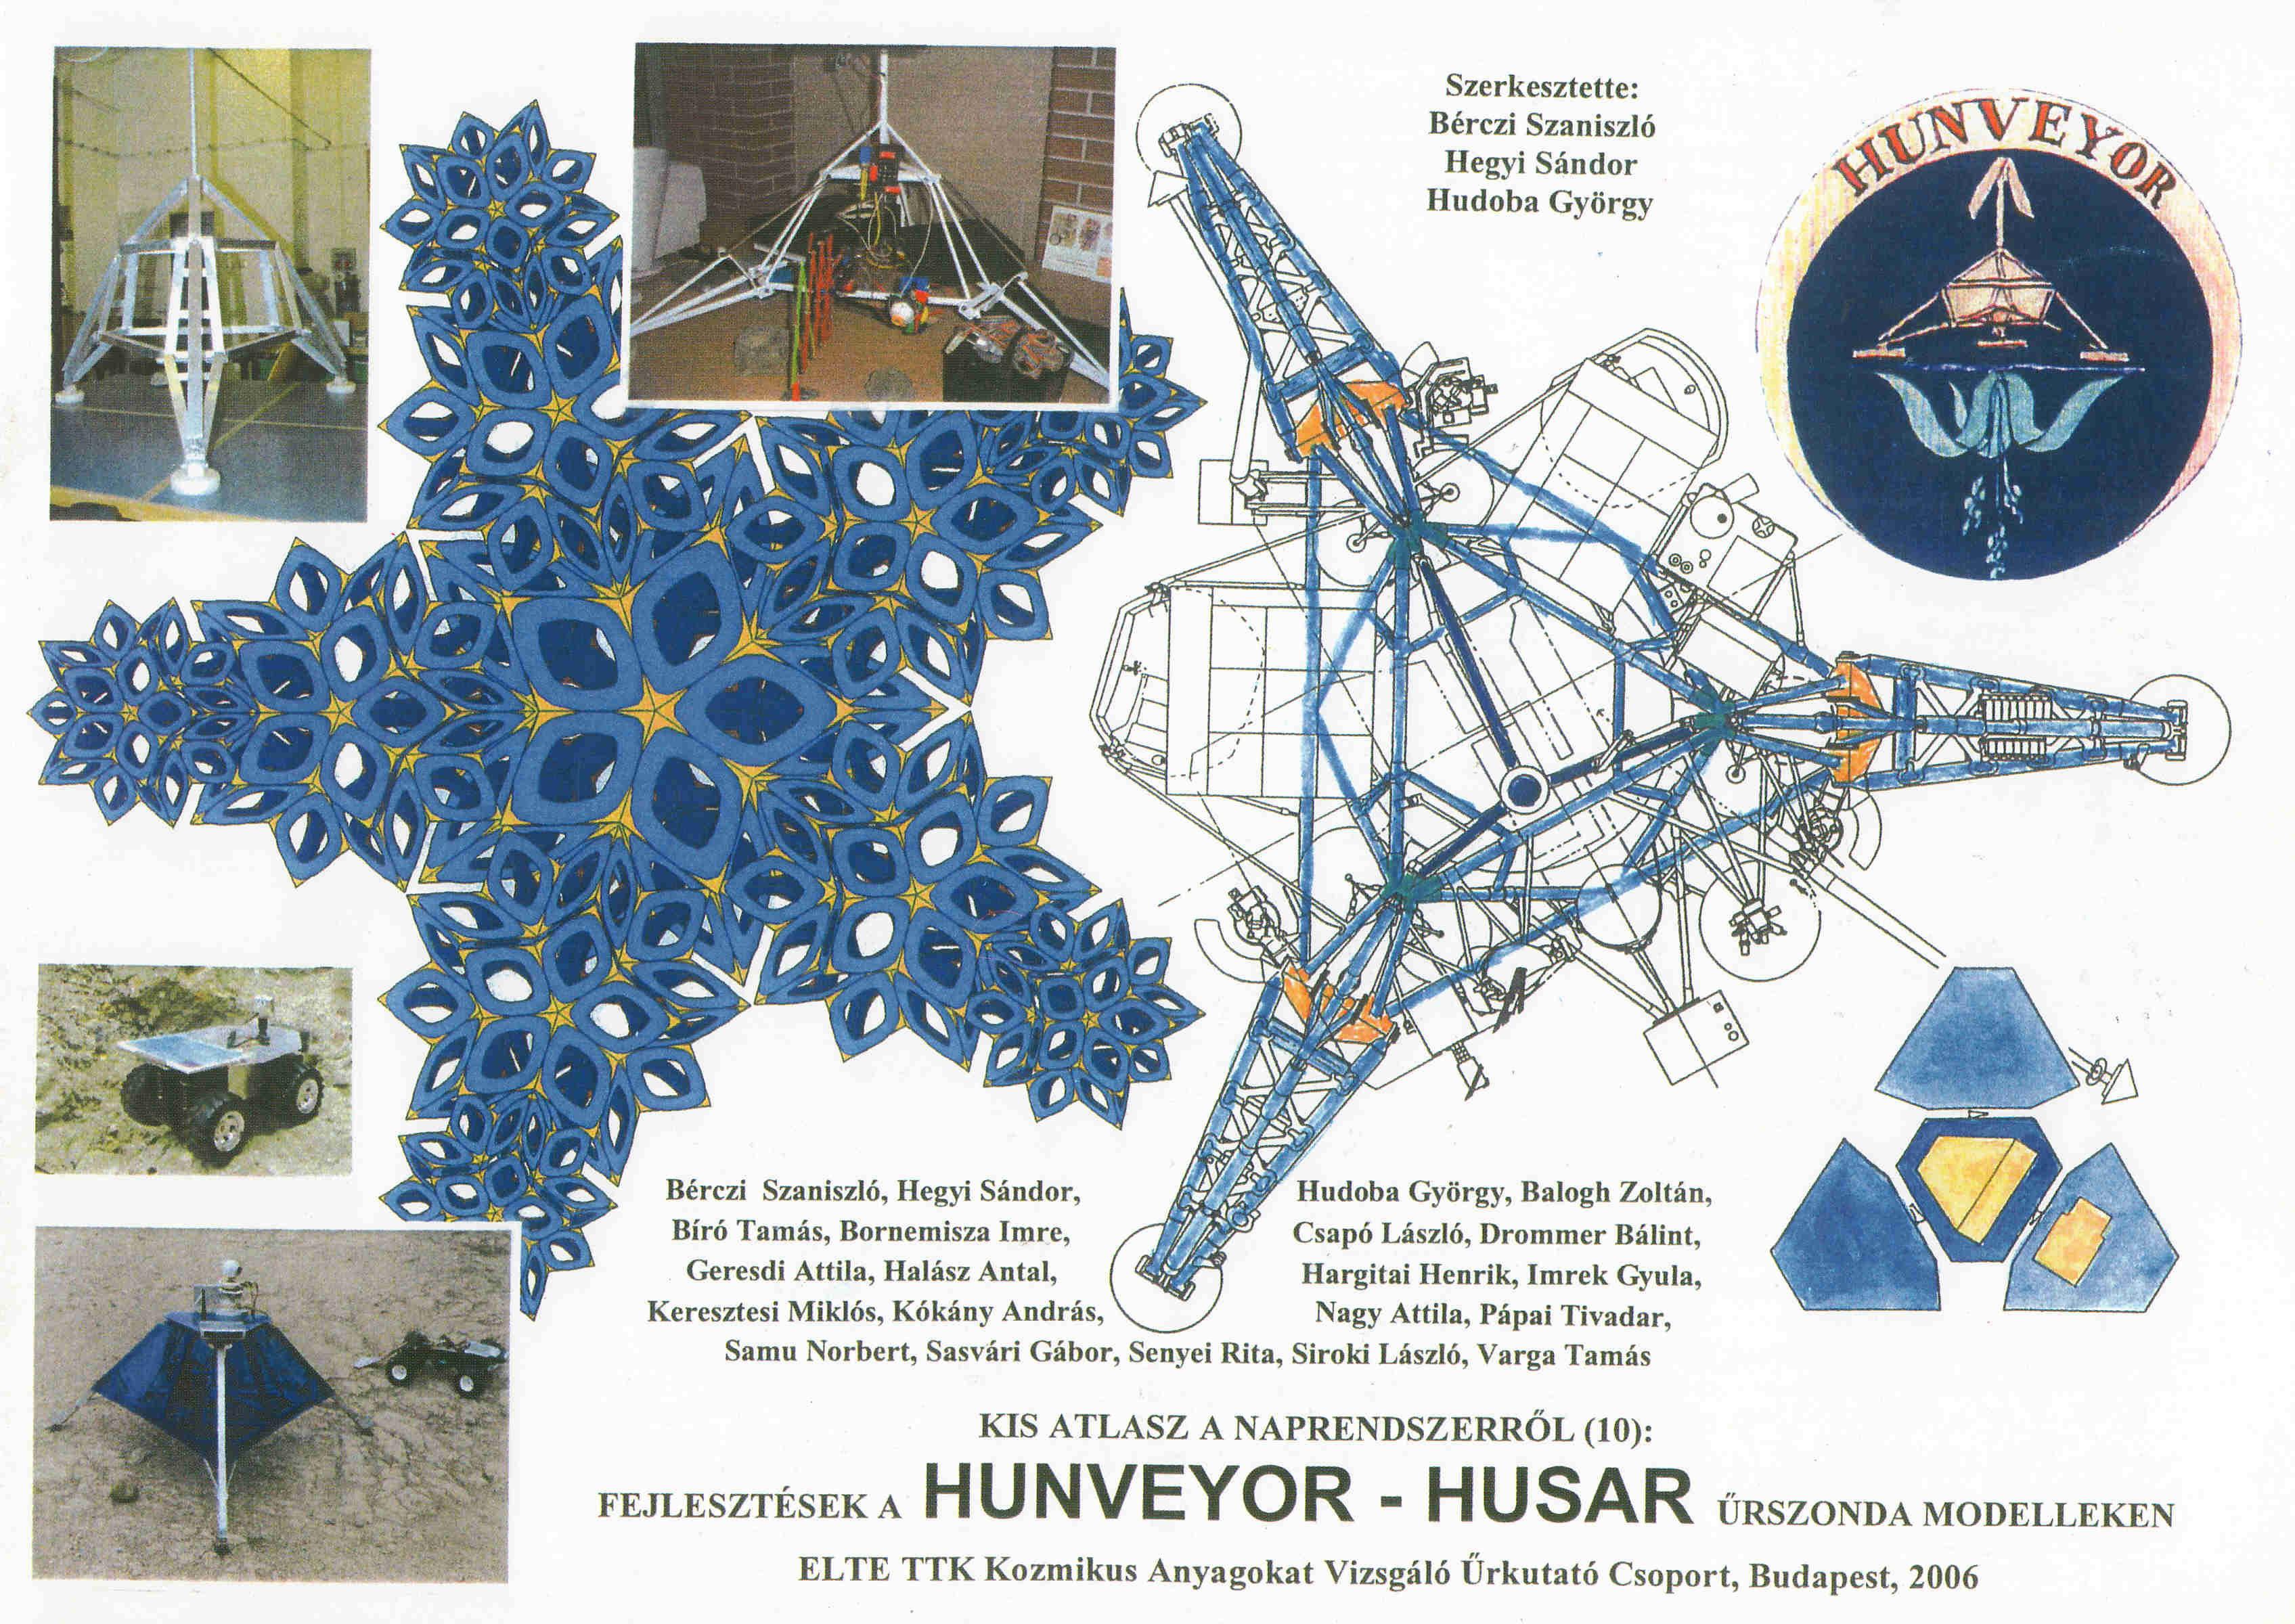 Hunveyor - Husar